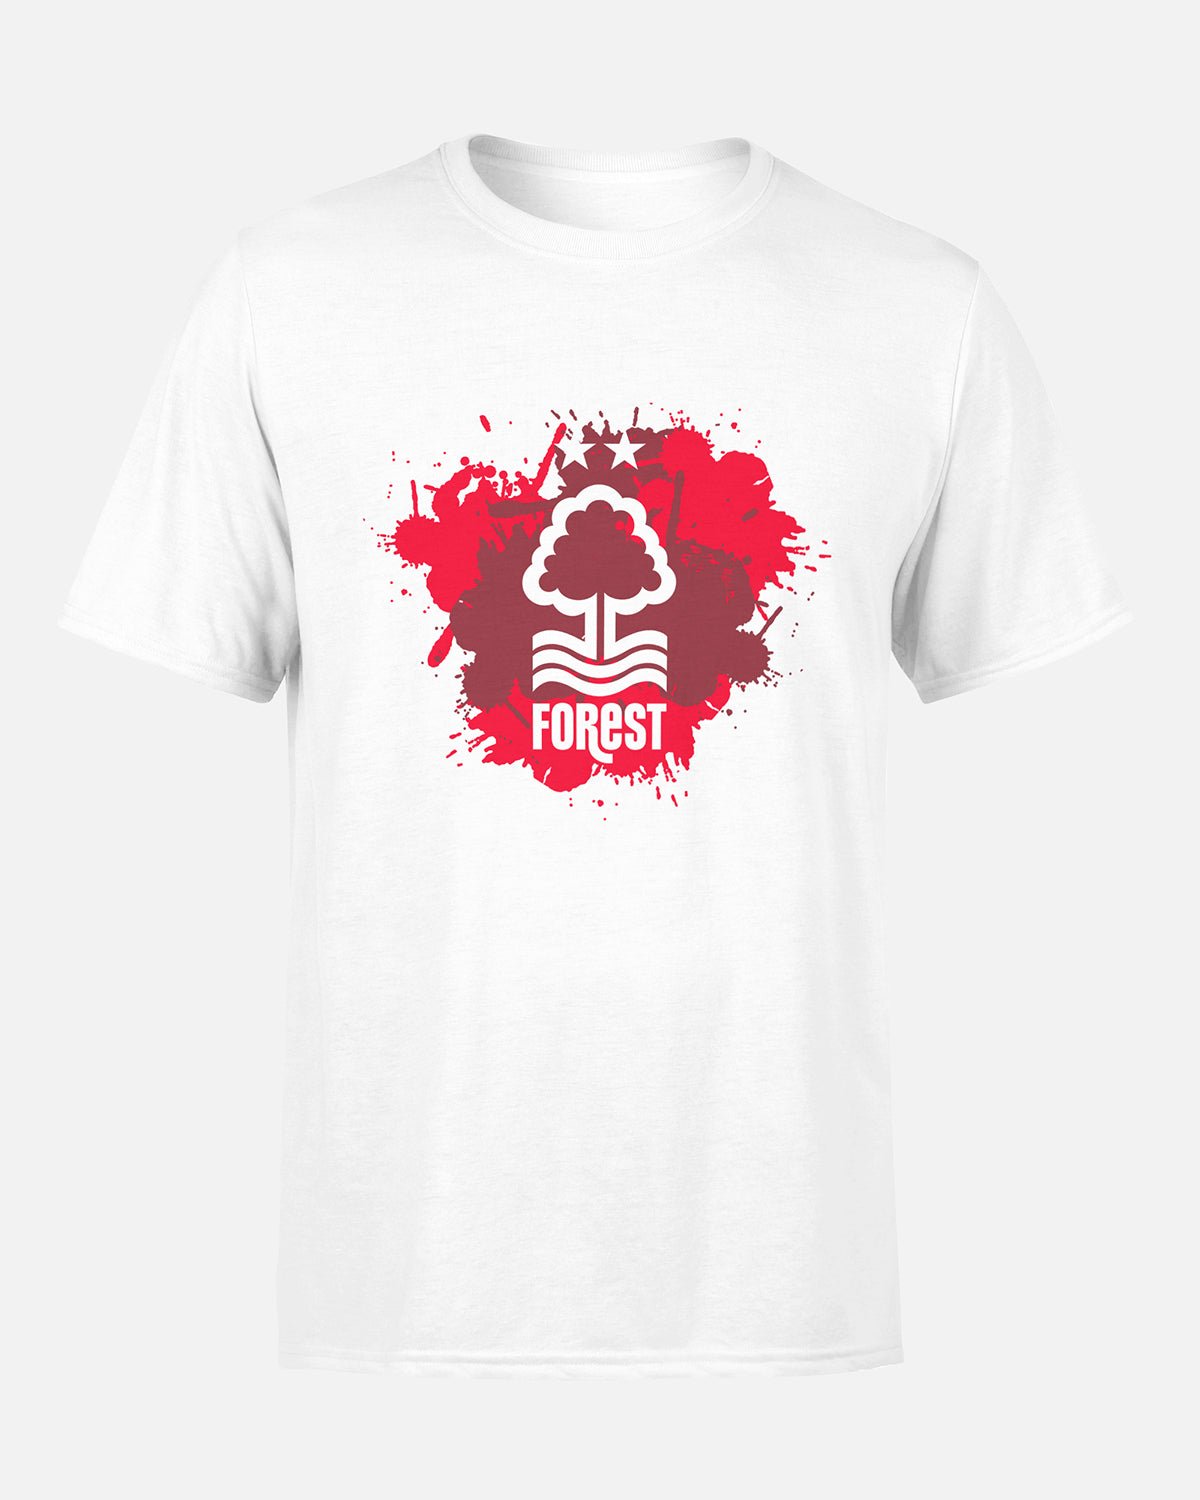 NFFC Junior White Splatter Print T-Shirt - Nottingham Forest FC